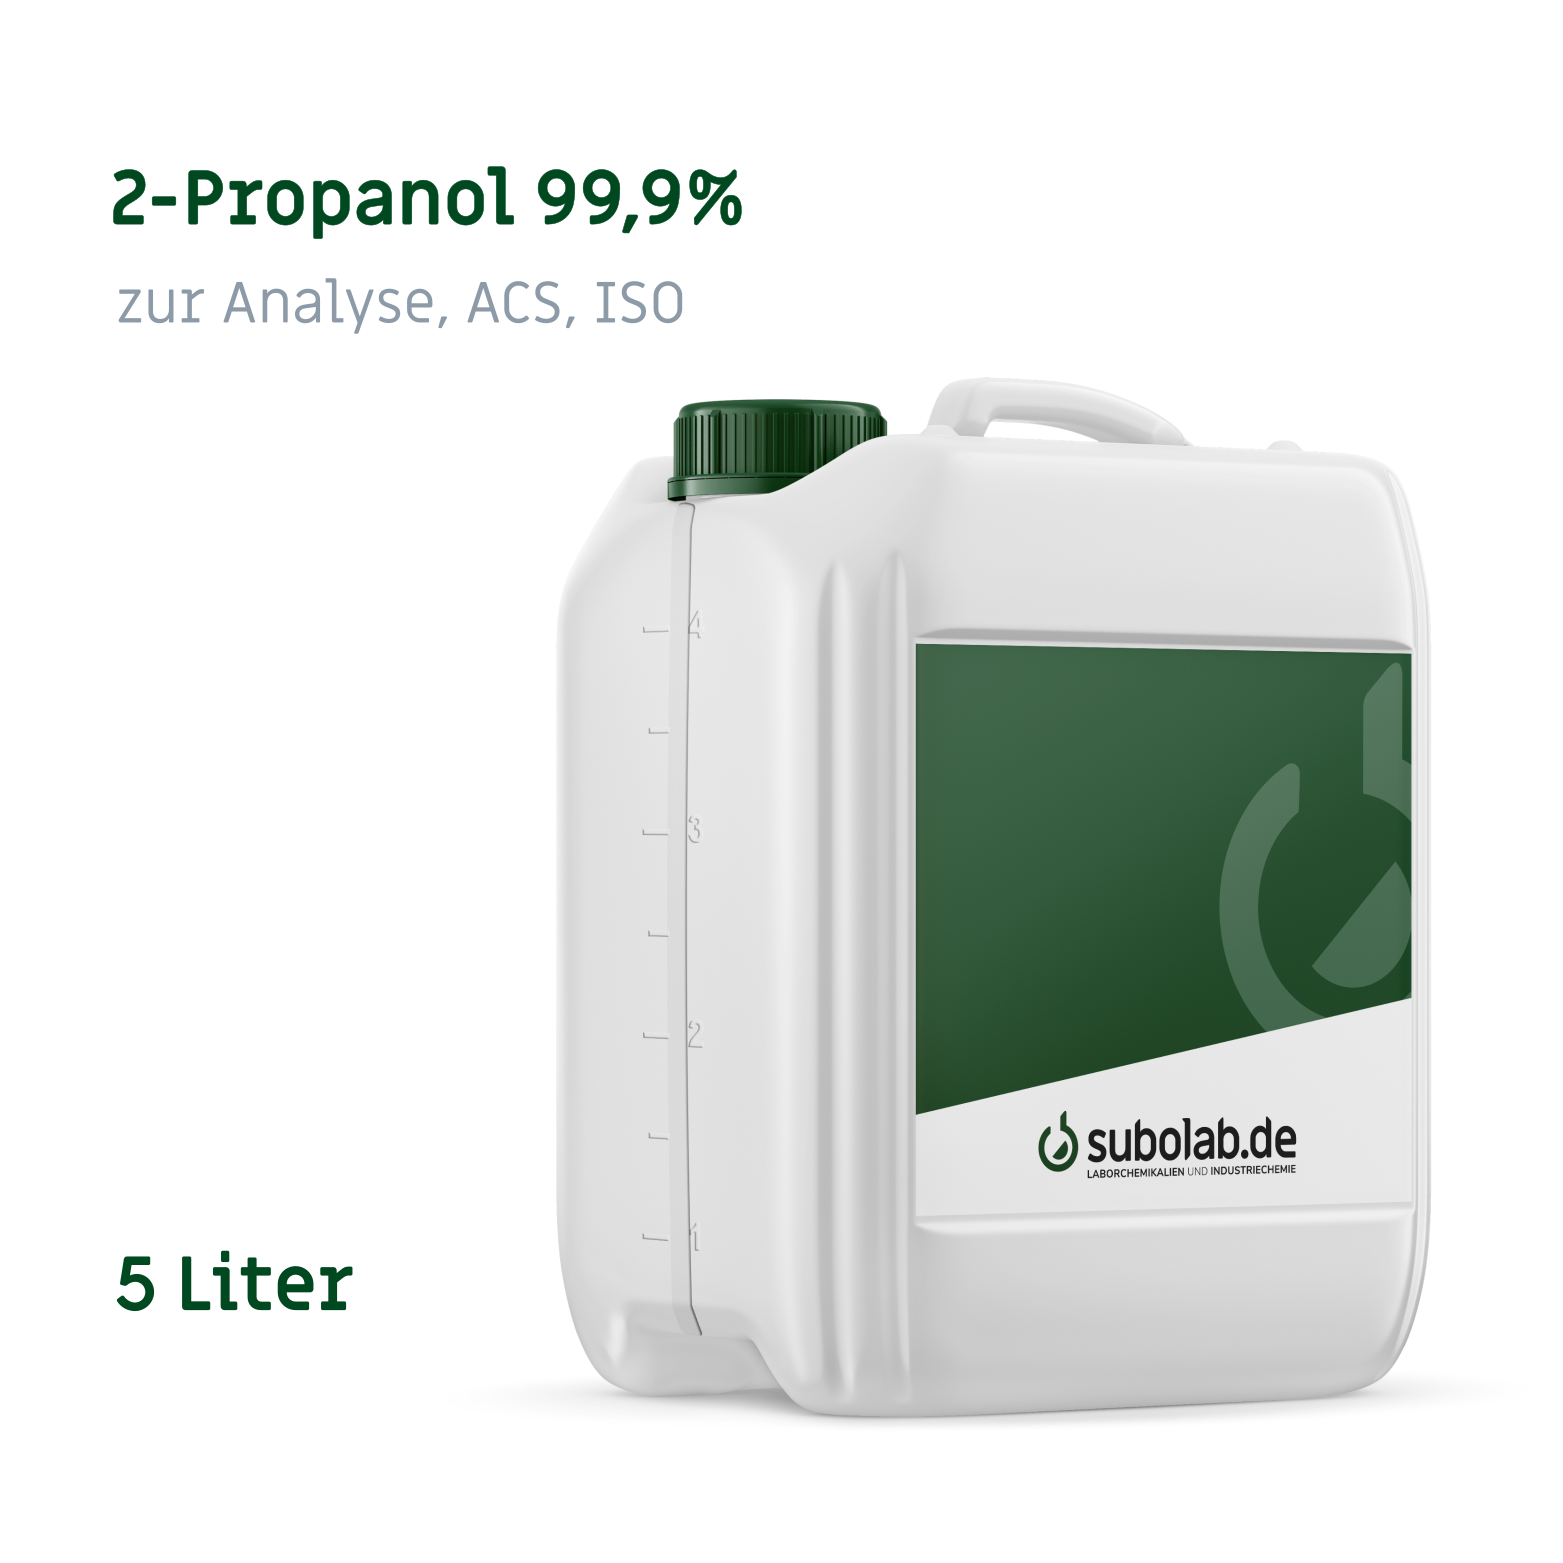 Bild von 2-Propanol 99,9% zur Analyse, ACS, ISO (5 Liter)